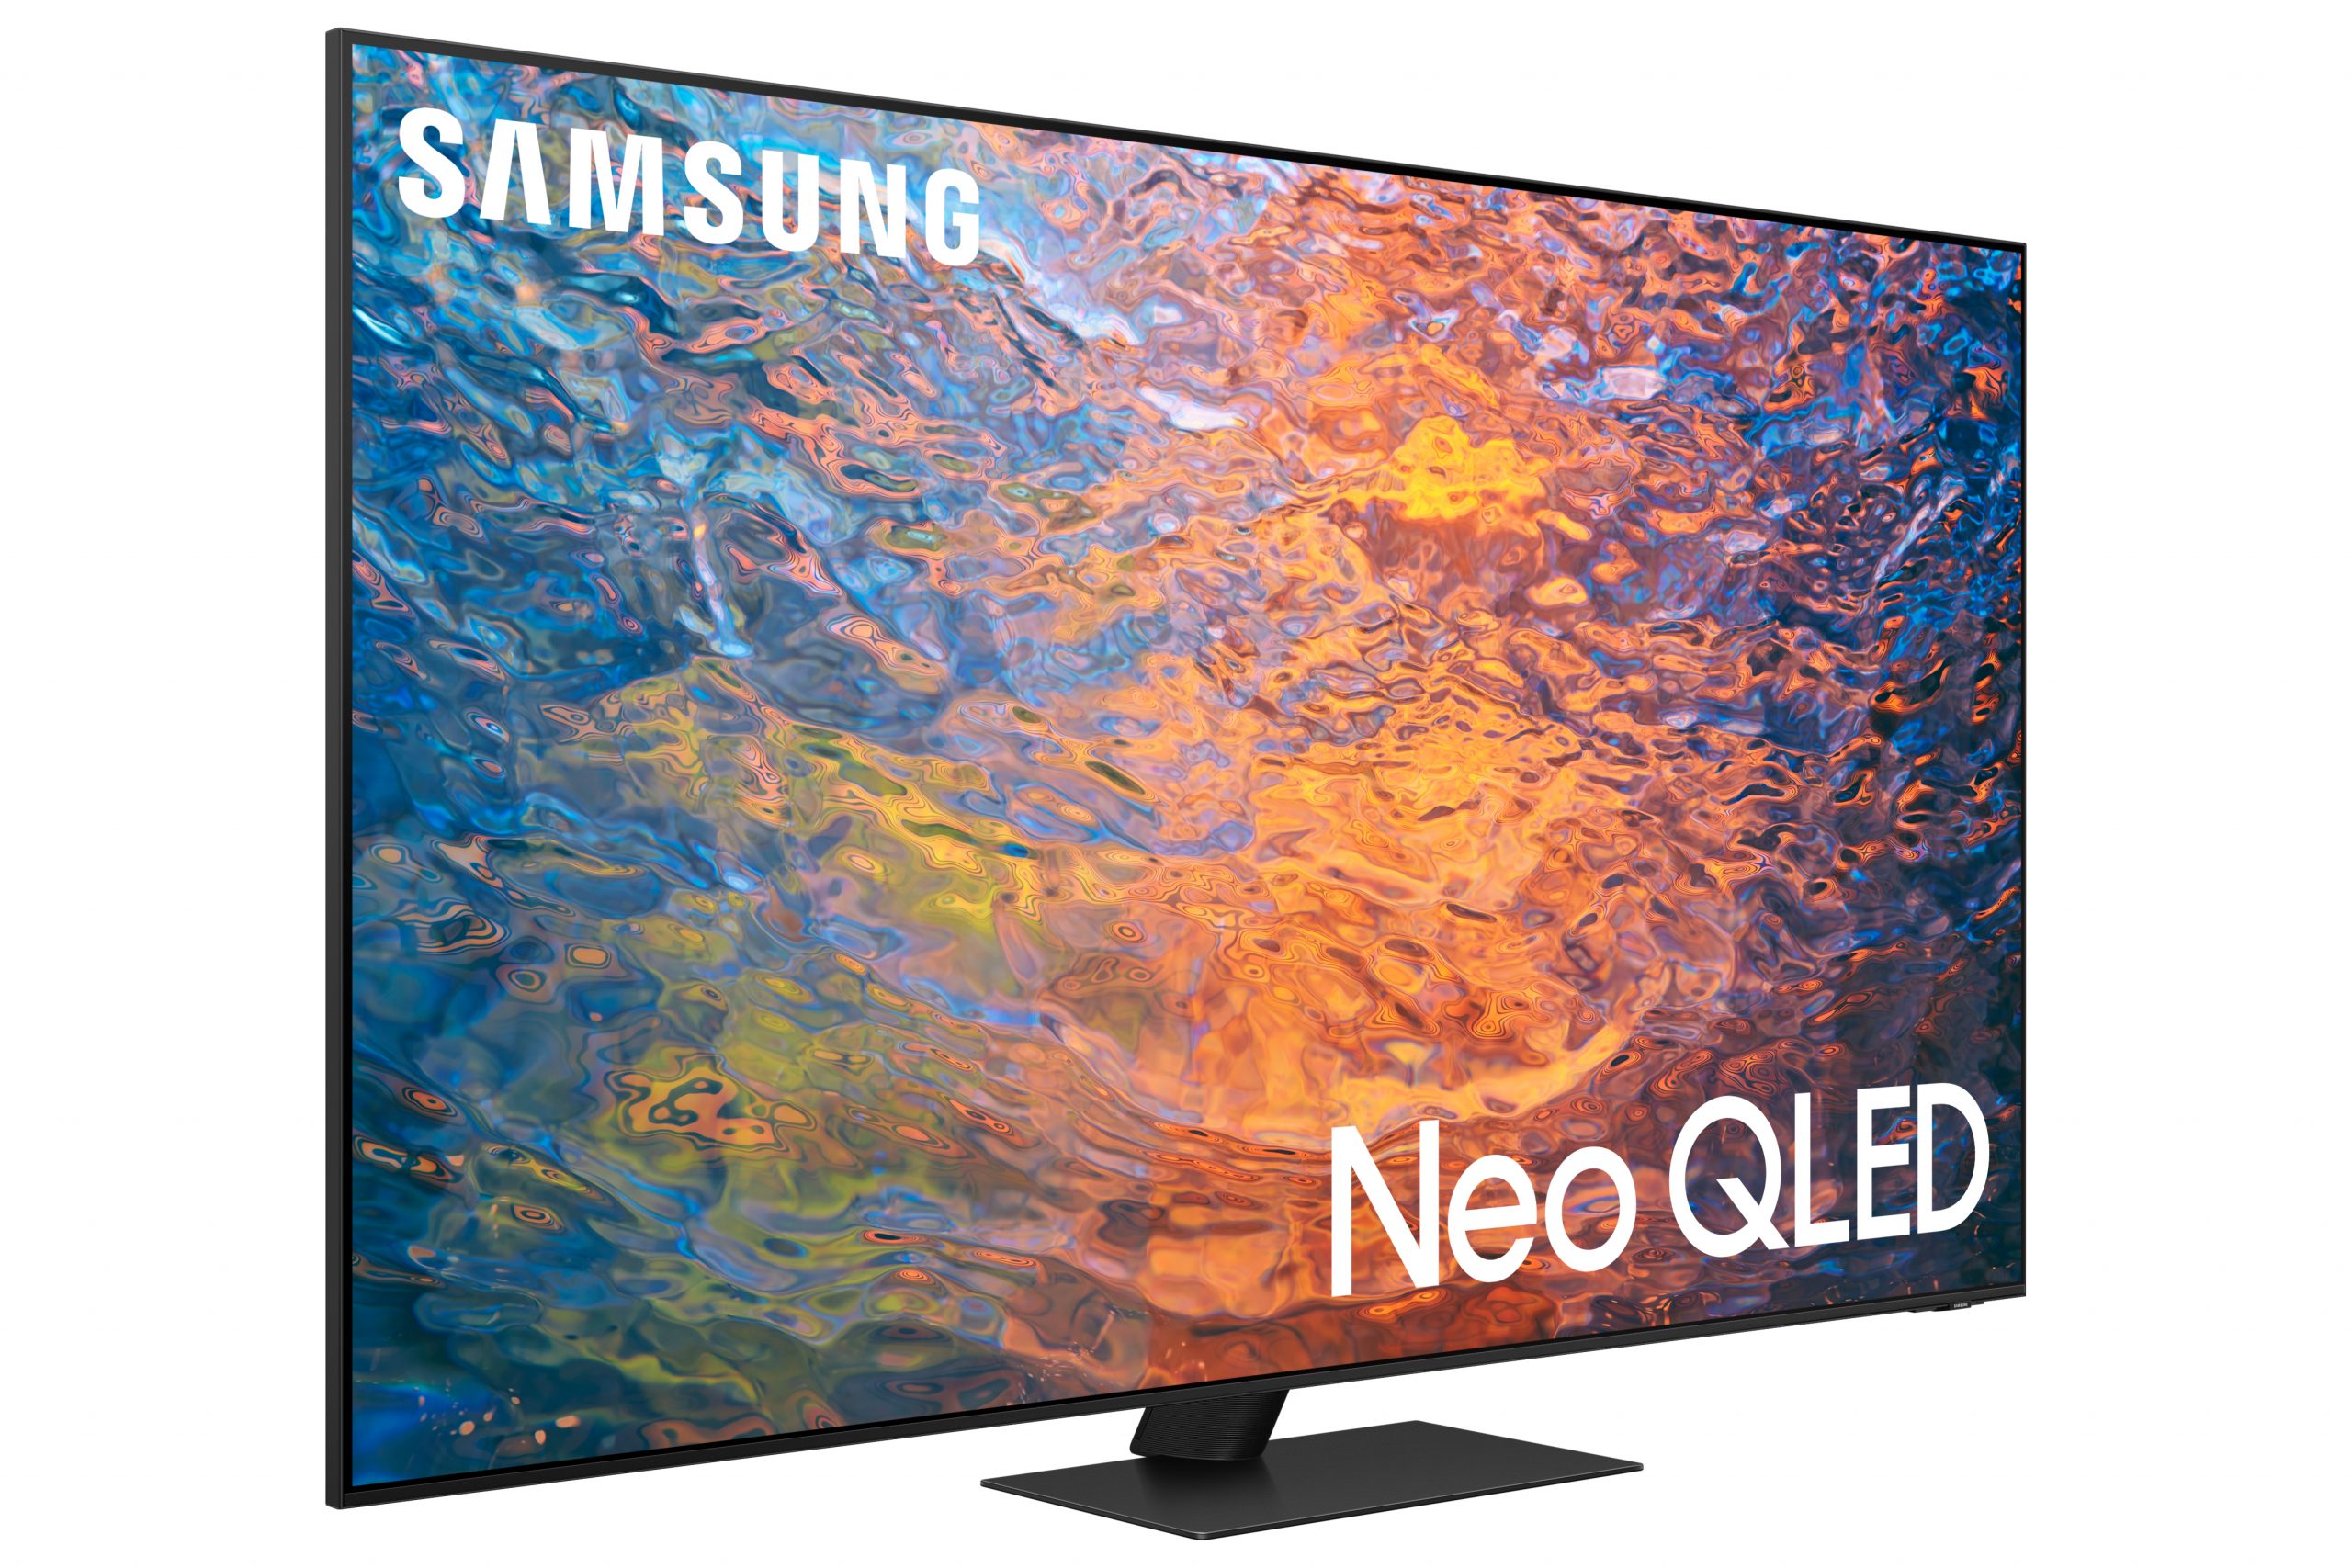 Los televisores Samsung Neo QLED 4K salen a la venta desde 1200€.